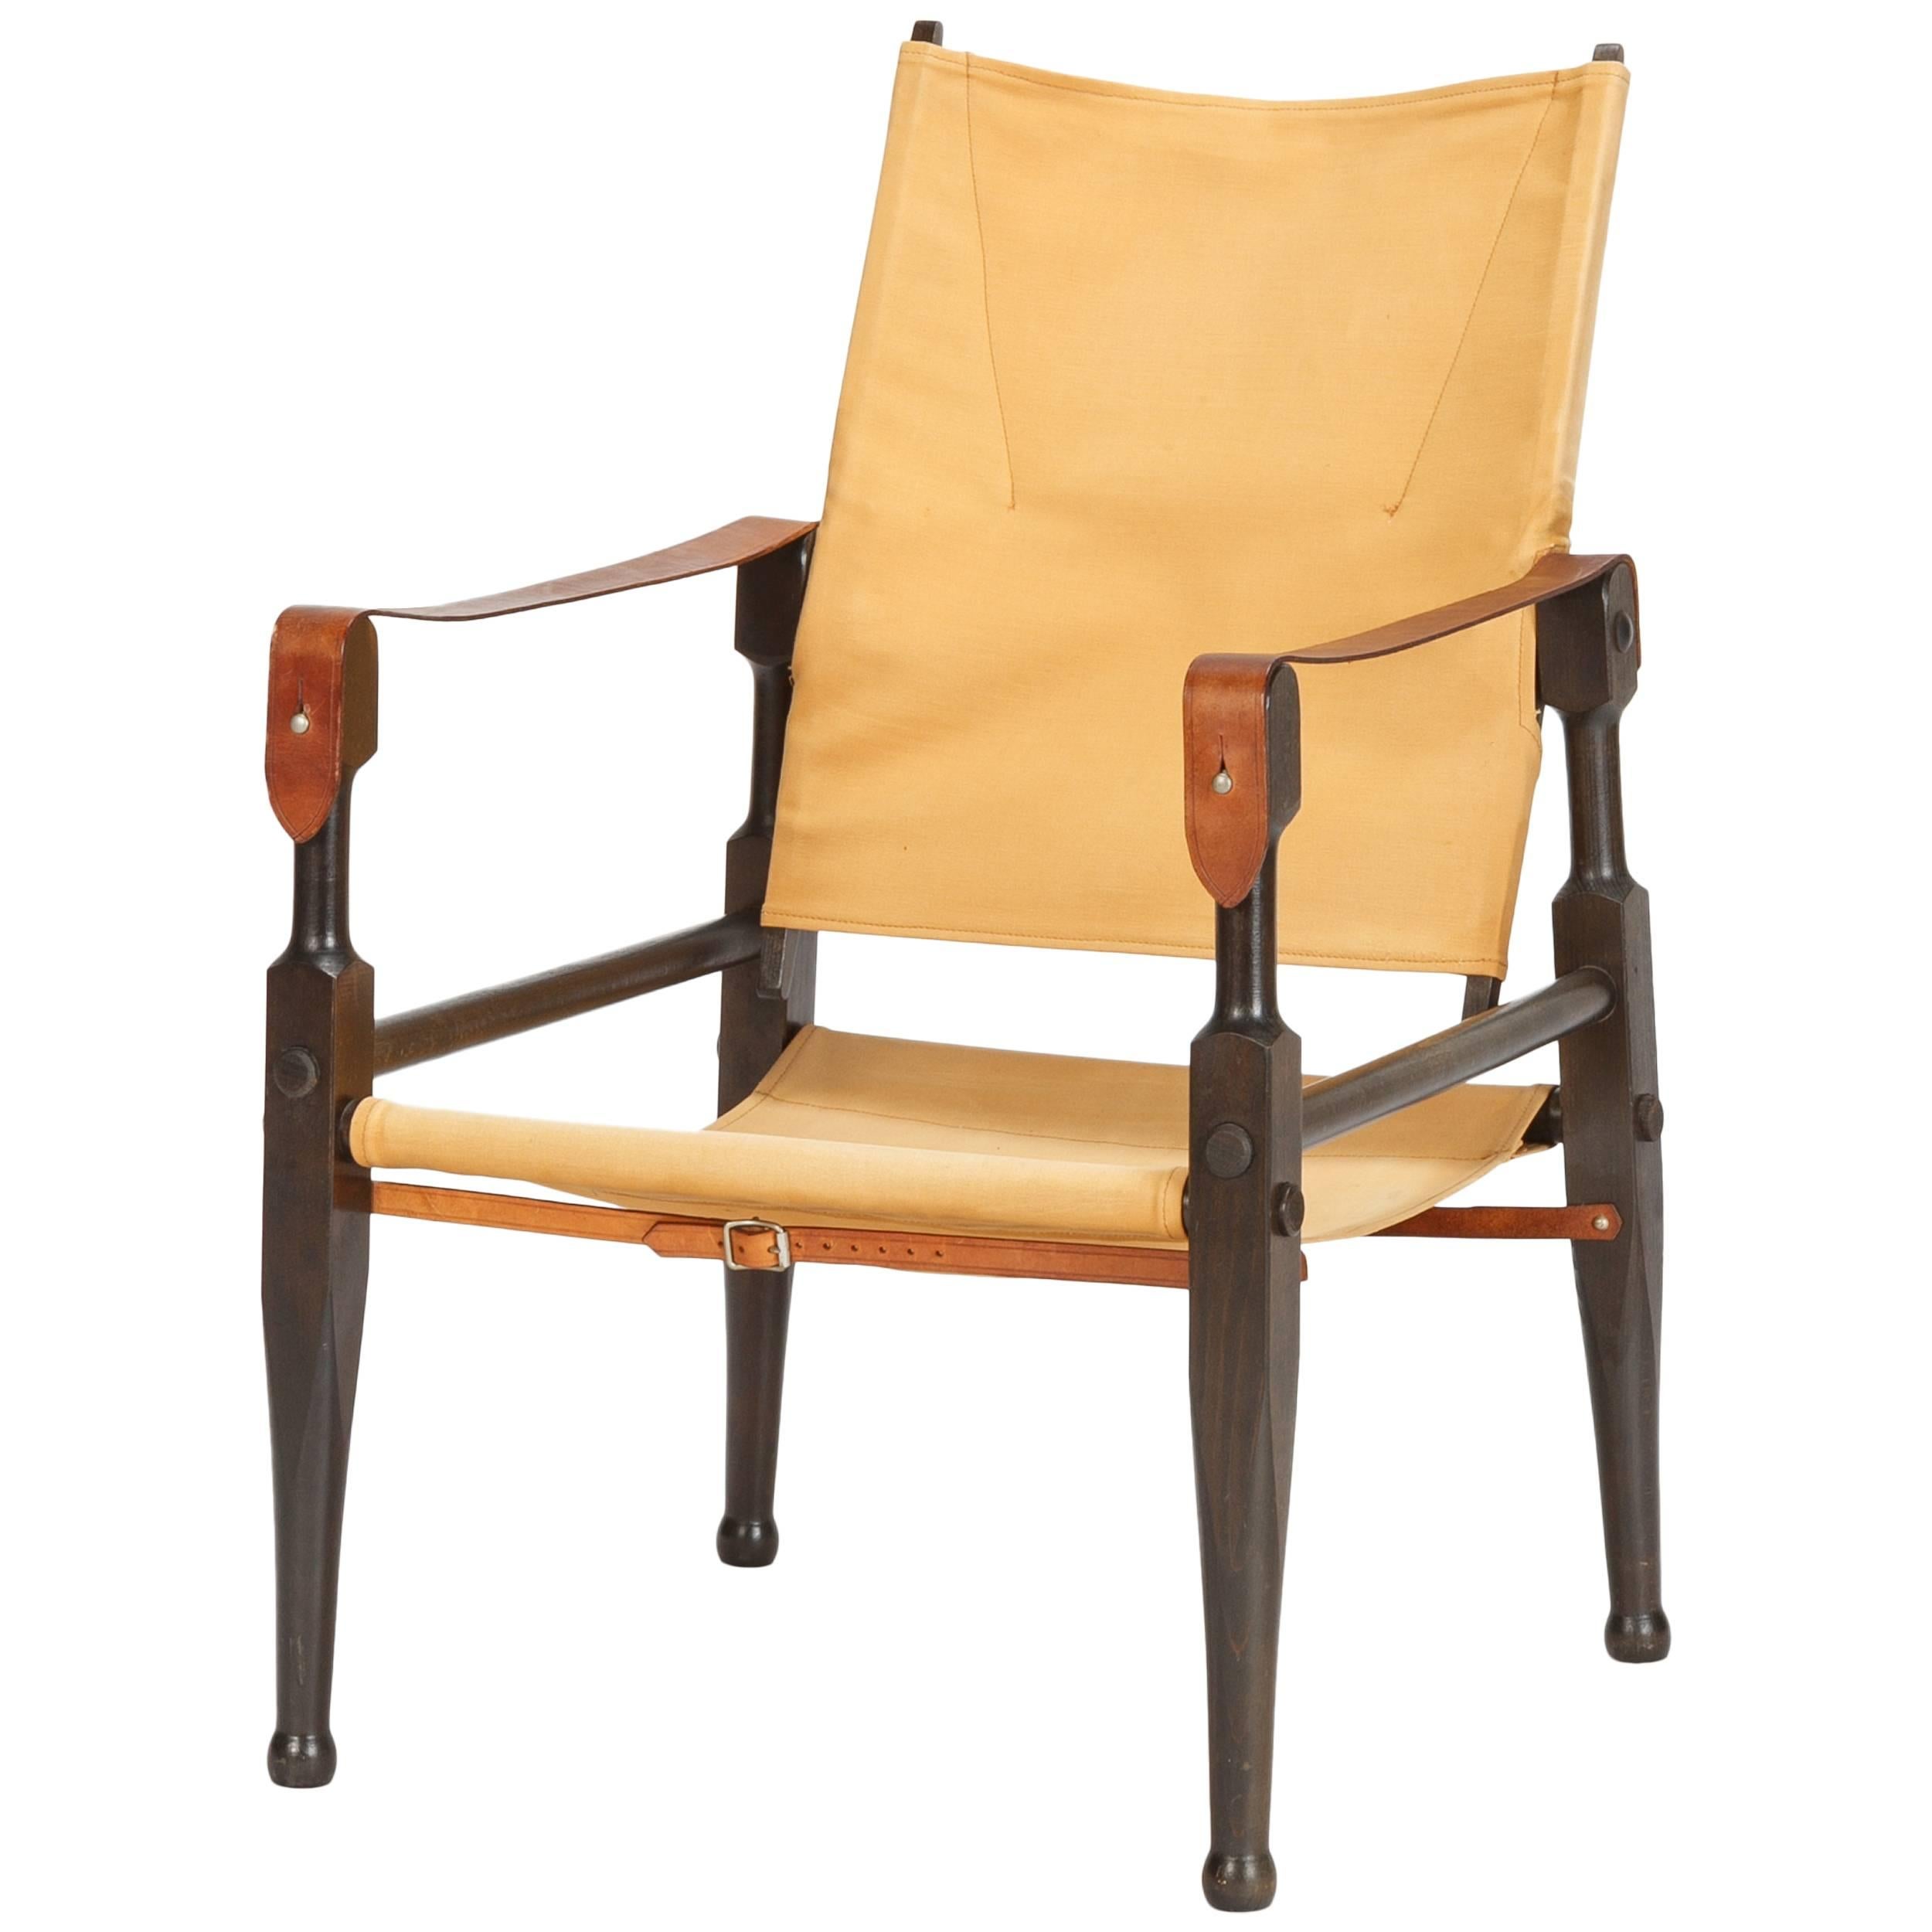 Swiss Safari Chair by Wilhelm Kienzle for Wohnbedarf, 1950s